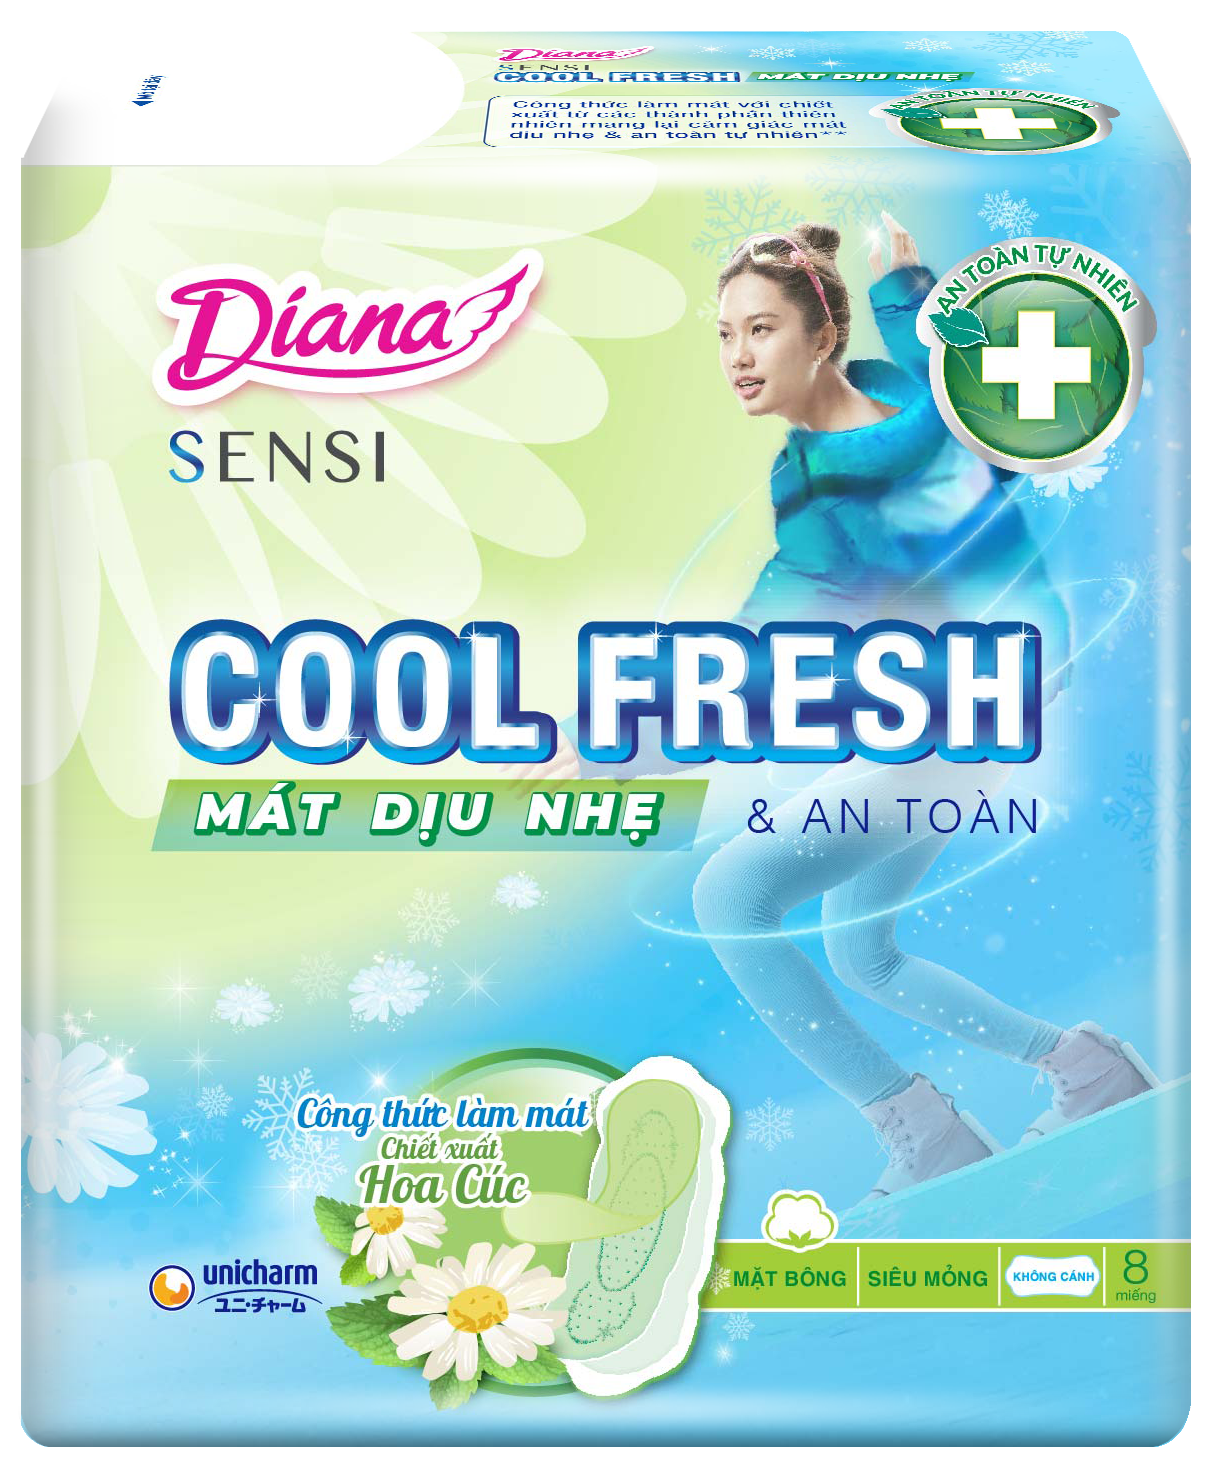 Diana SENSI Cool Fresh Mát Dịu siêu mỏng không cánh